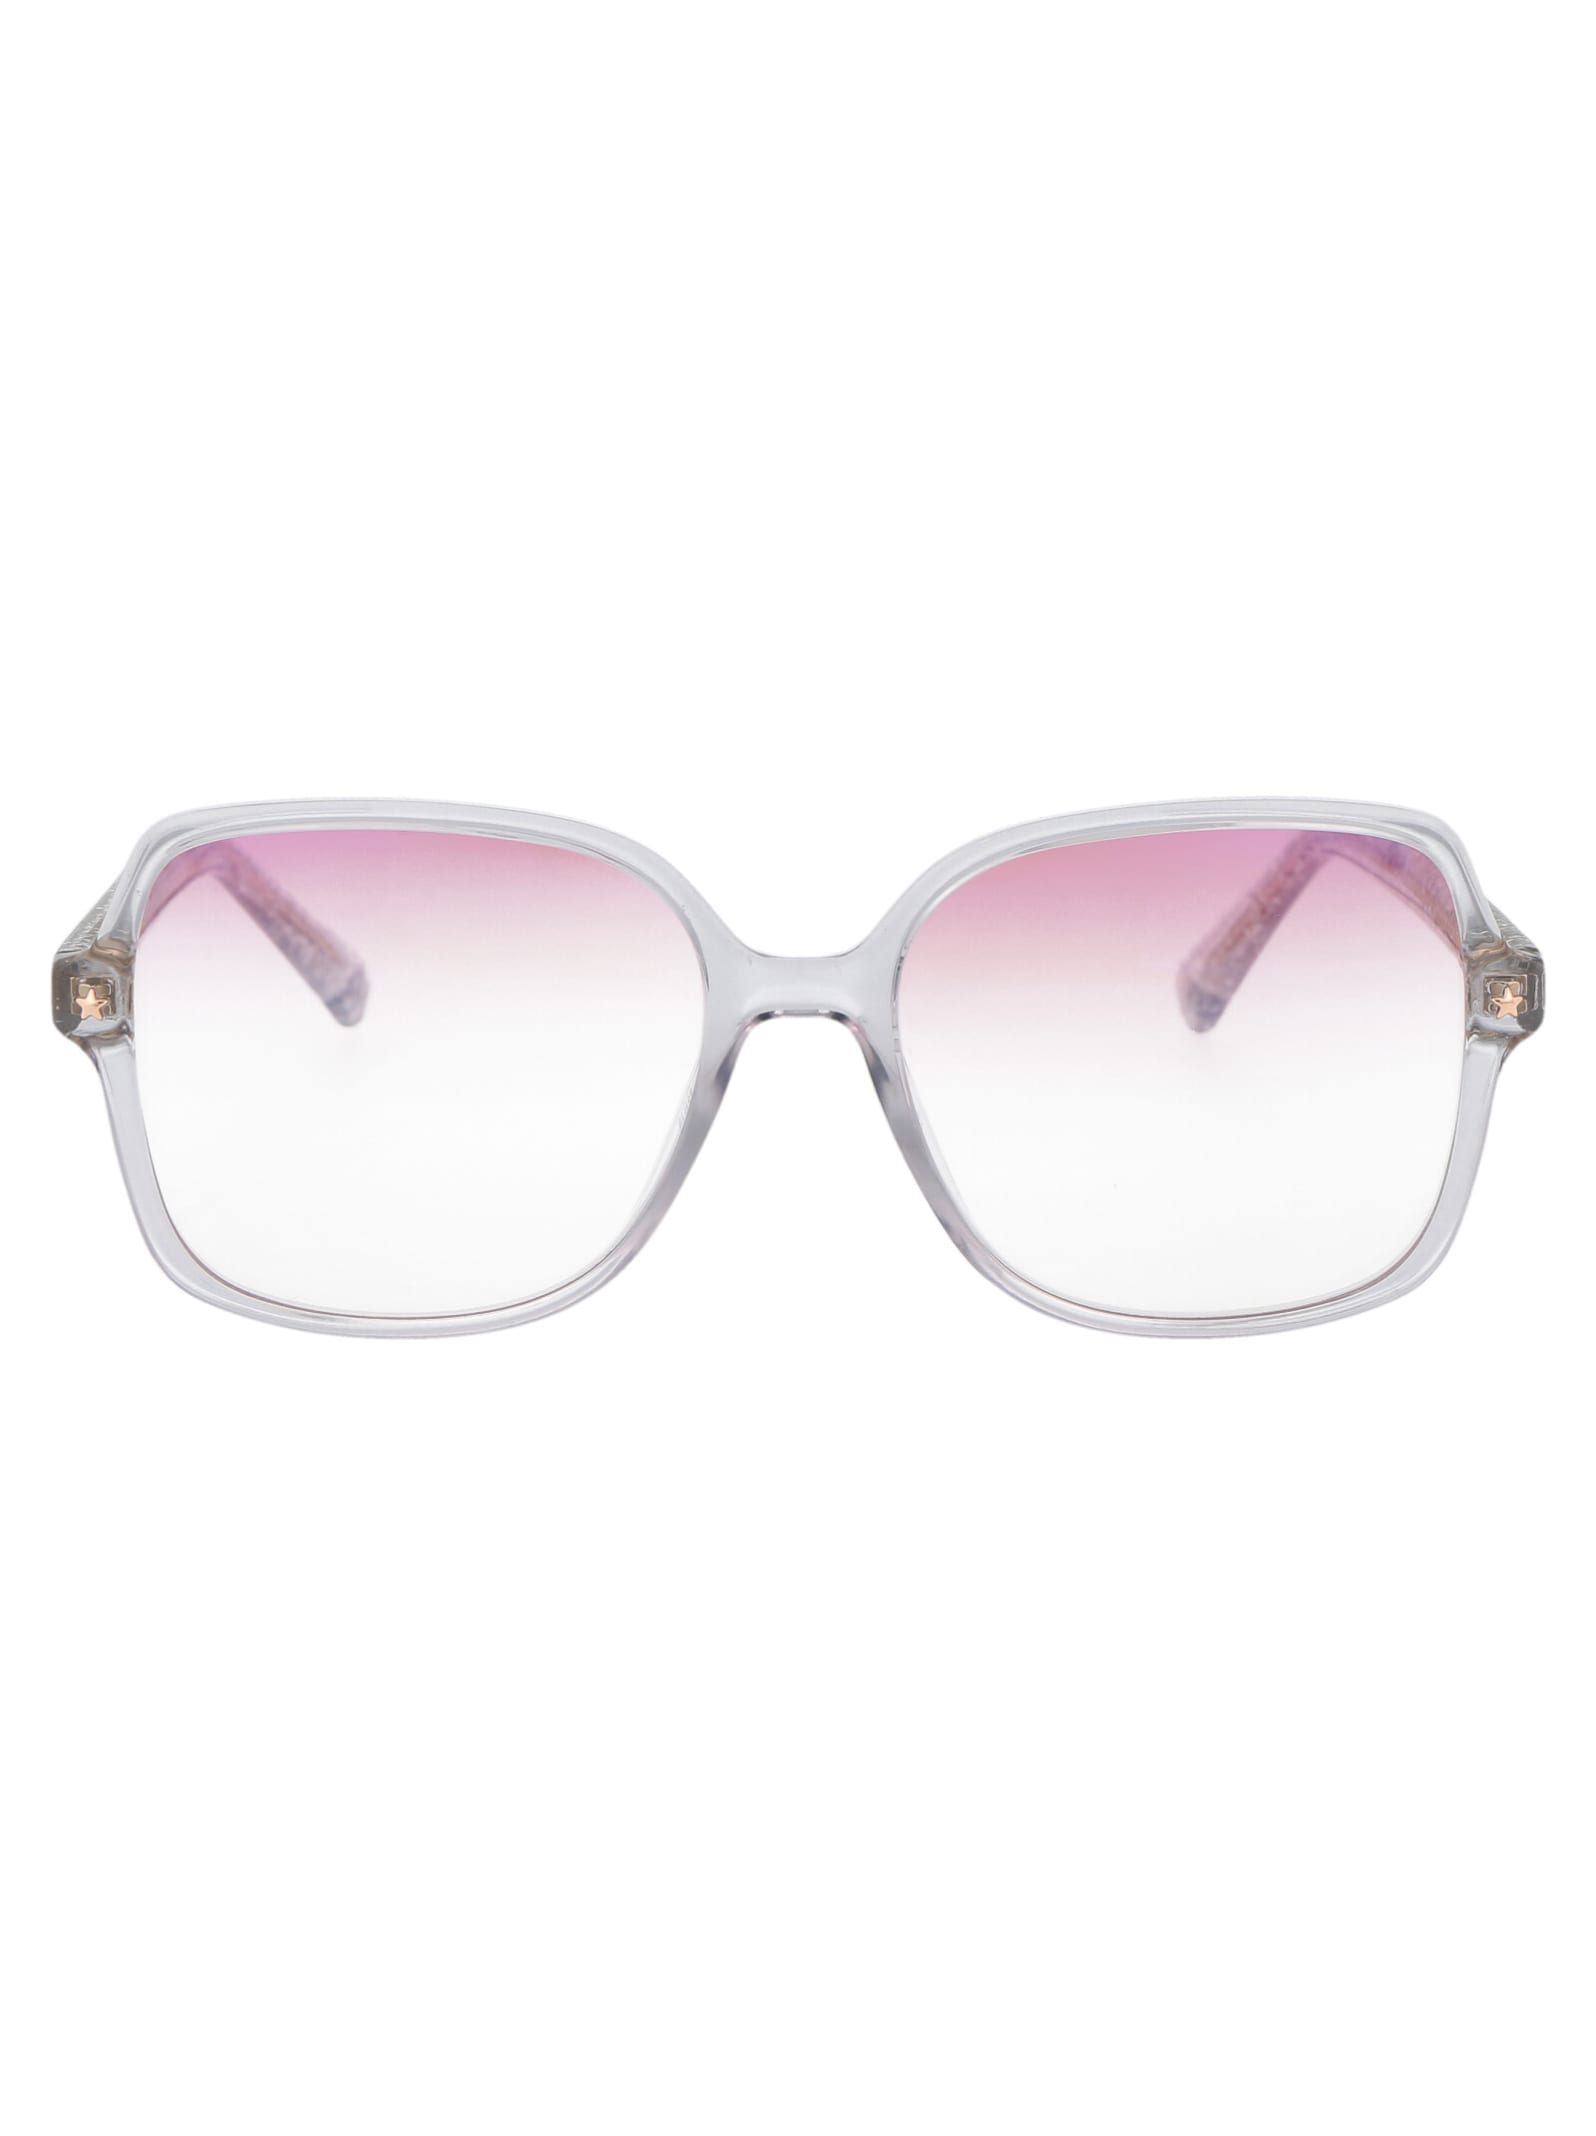 Cf 1026/bb Glasses